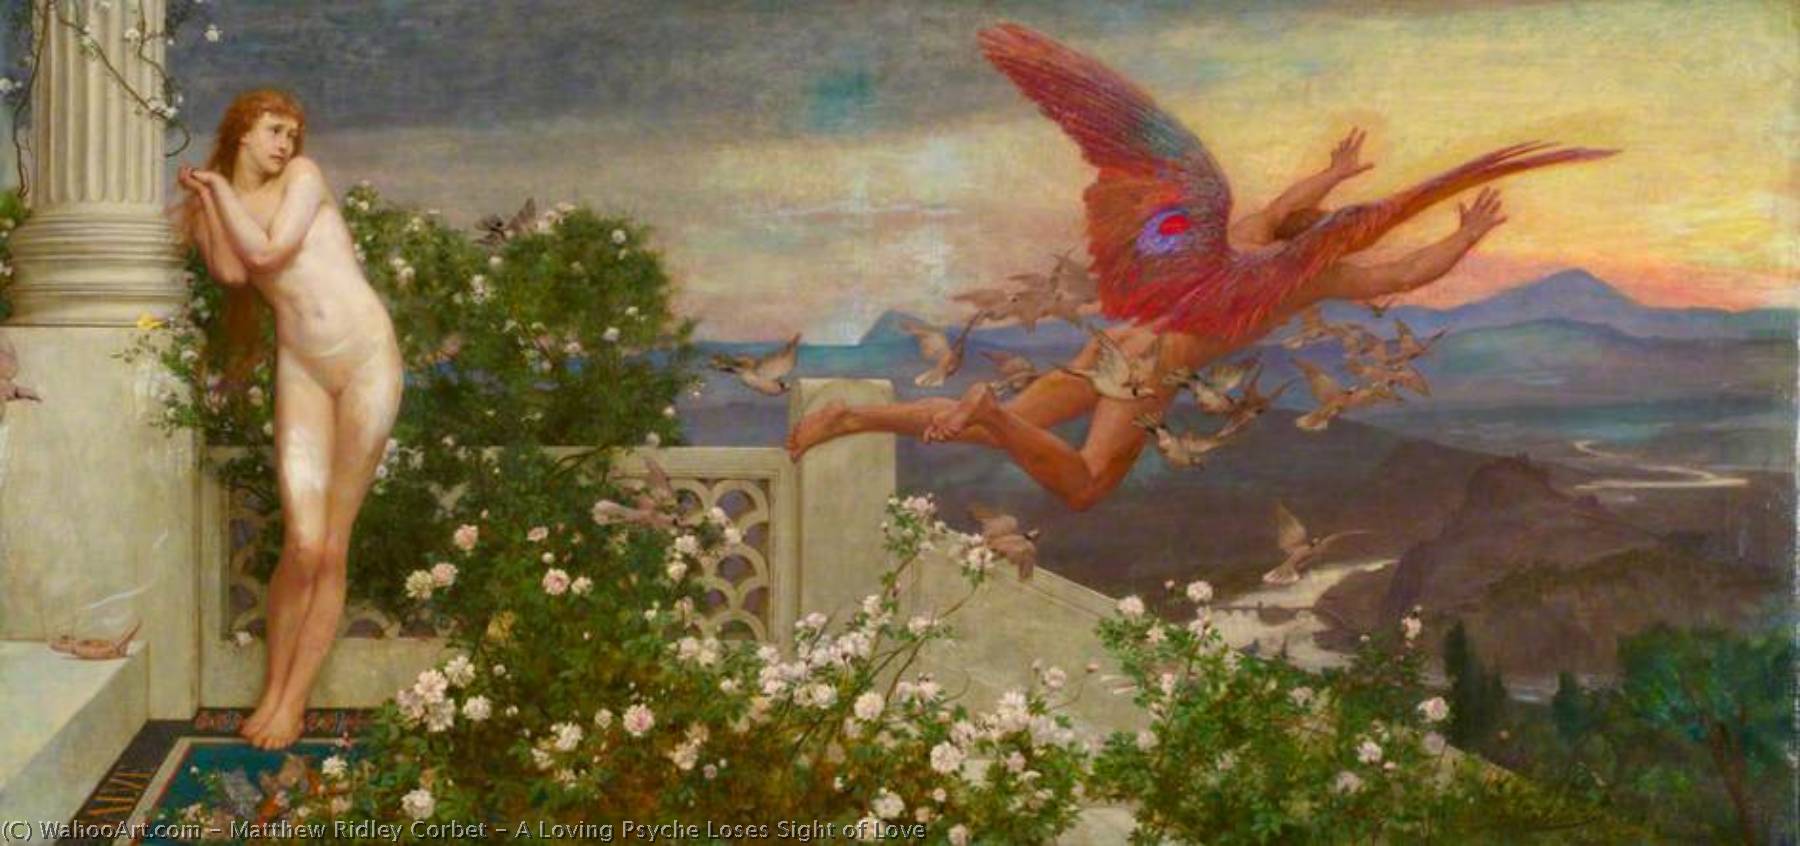 Wikioo.org – La Enciclopedia de las Bellas Artes - Pintura, Obras de arte de Matthew Ridley Corbet - Un amoroso  Psique  pierde  aspecto  todaclasede  amor